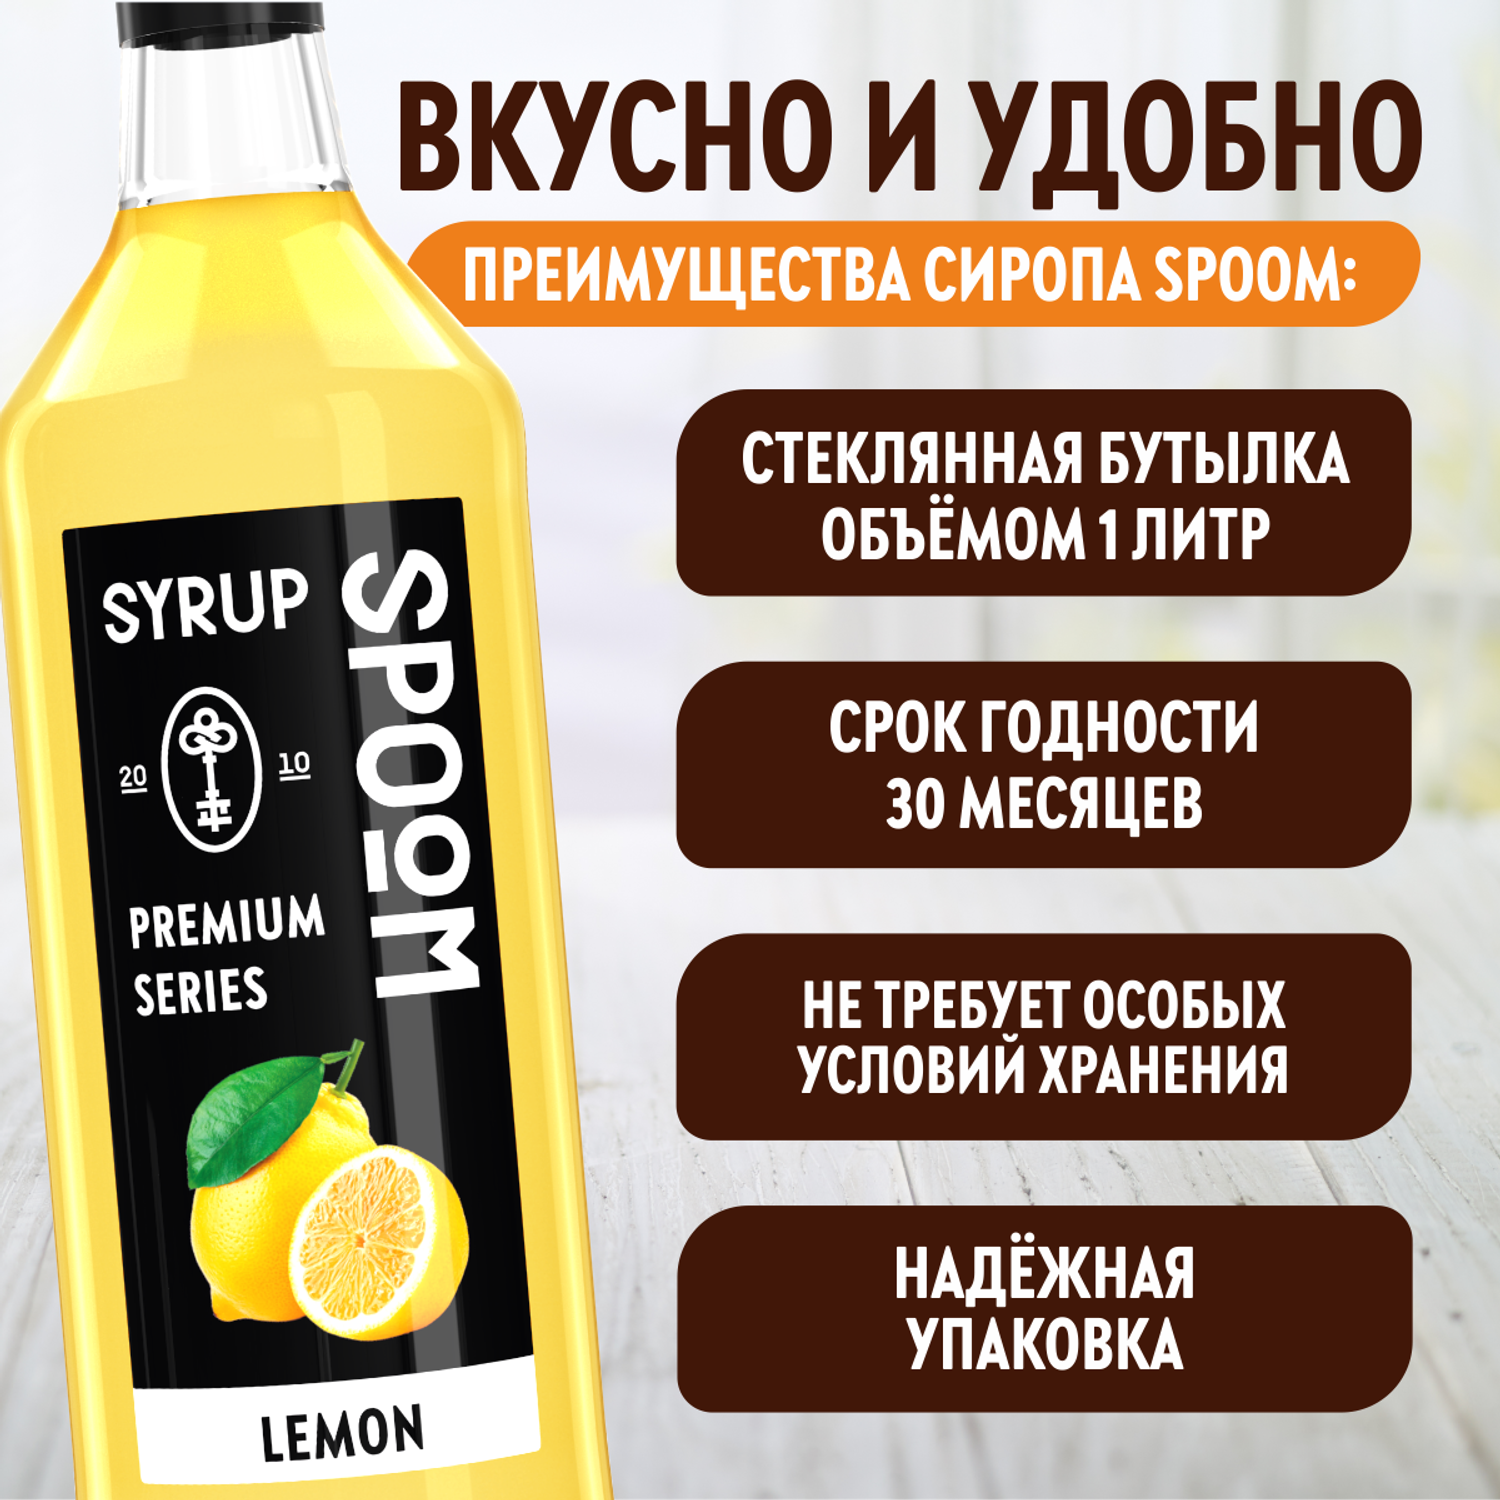 Сироп SPOOM Лимон 1л для коктейлей лимонадов и десертов - фото 4